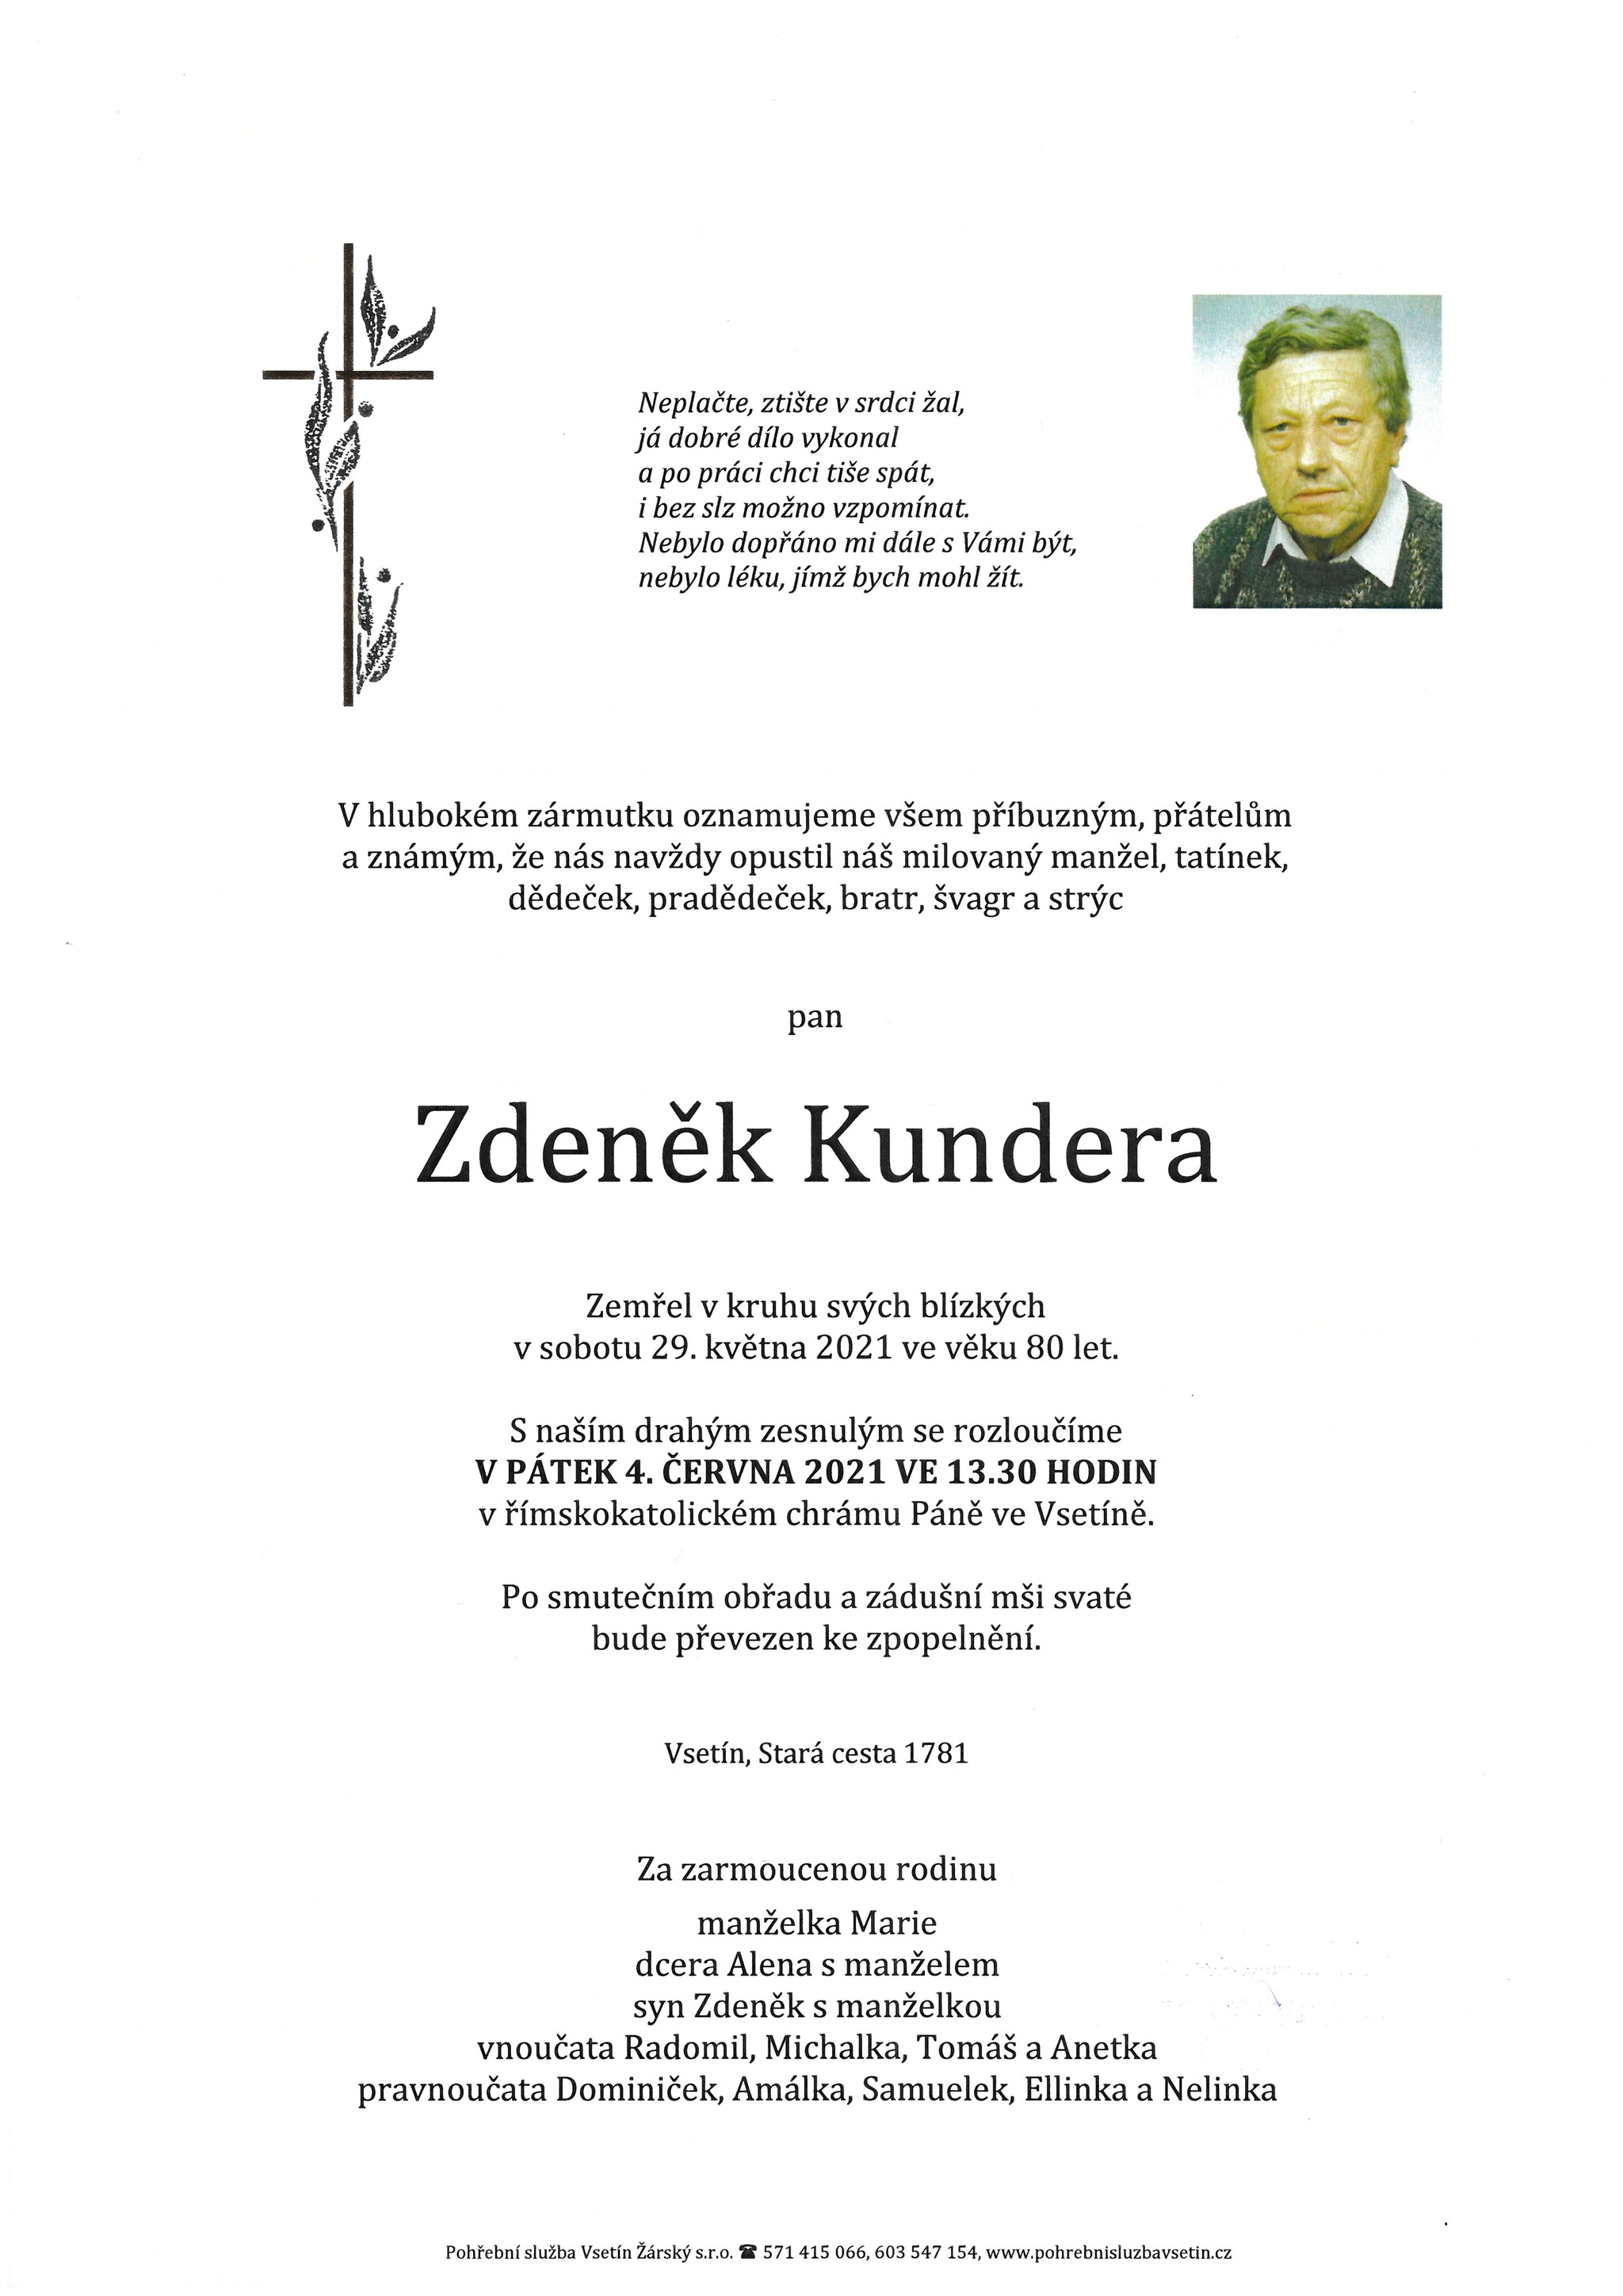 Zdeněk Kundera